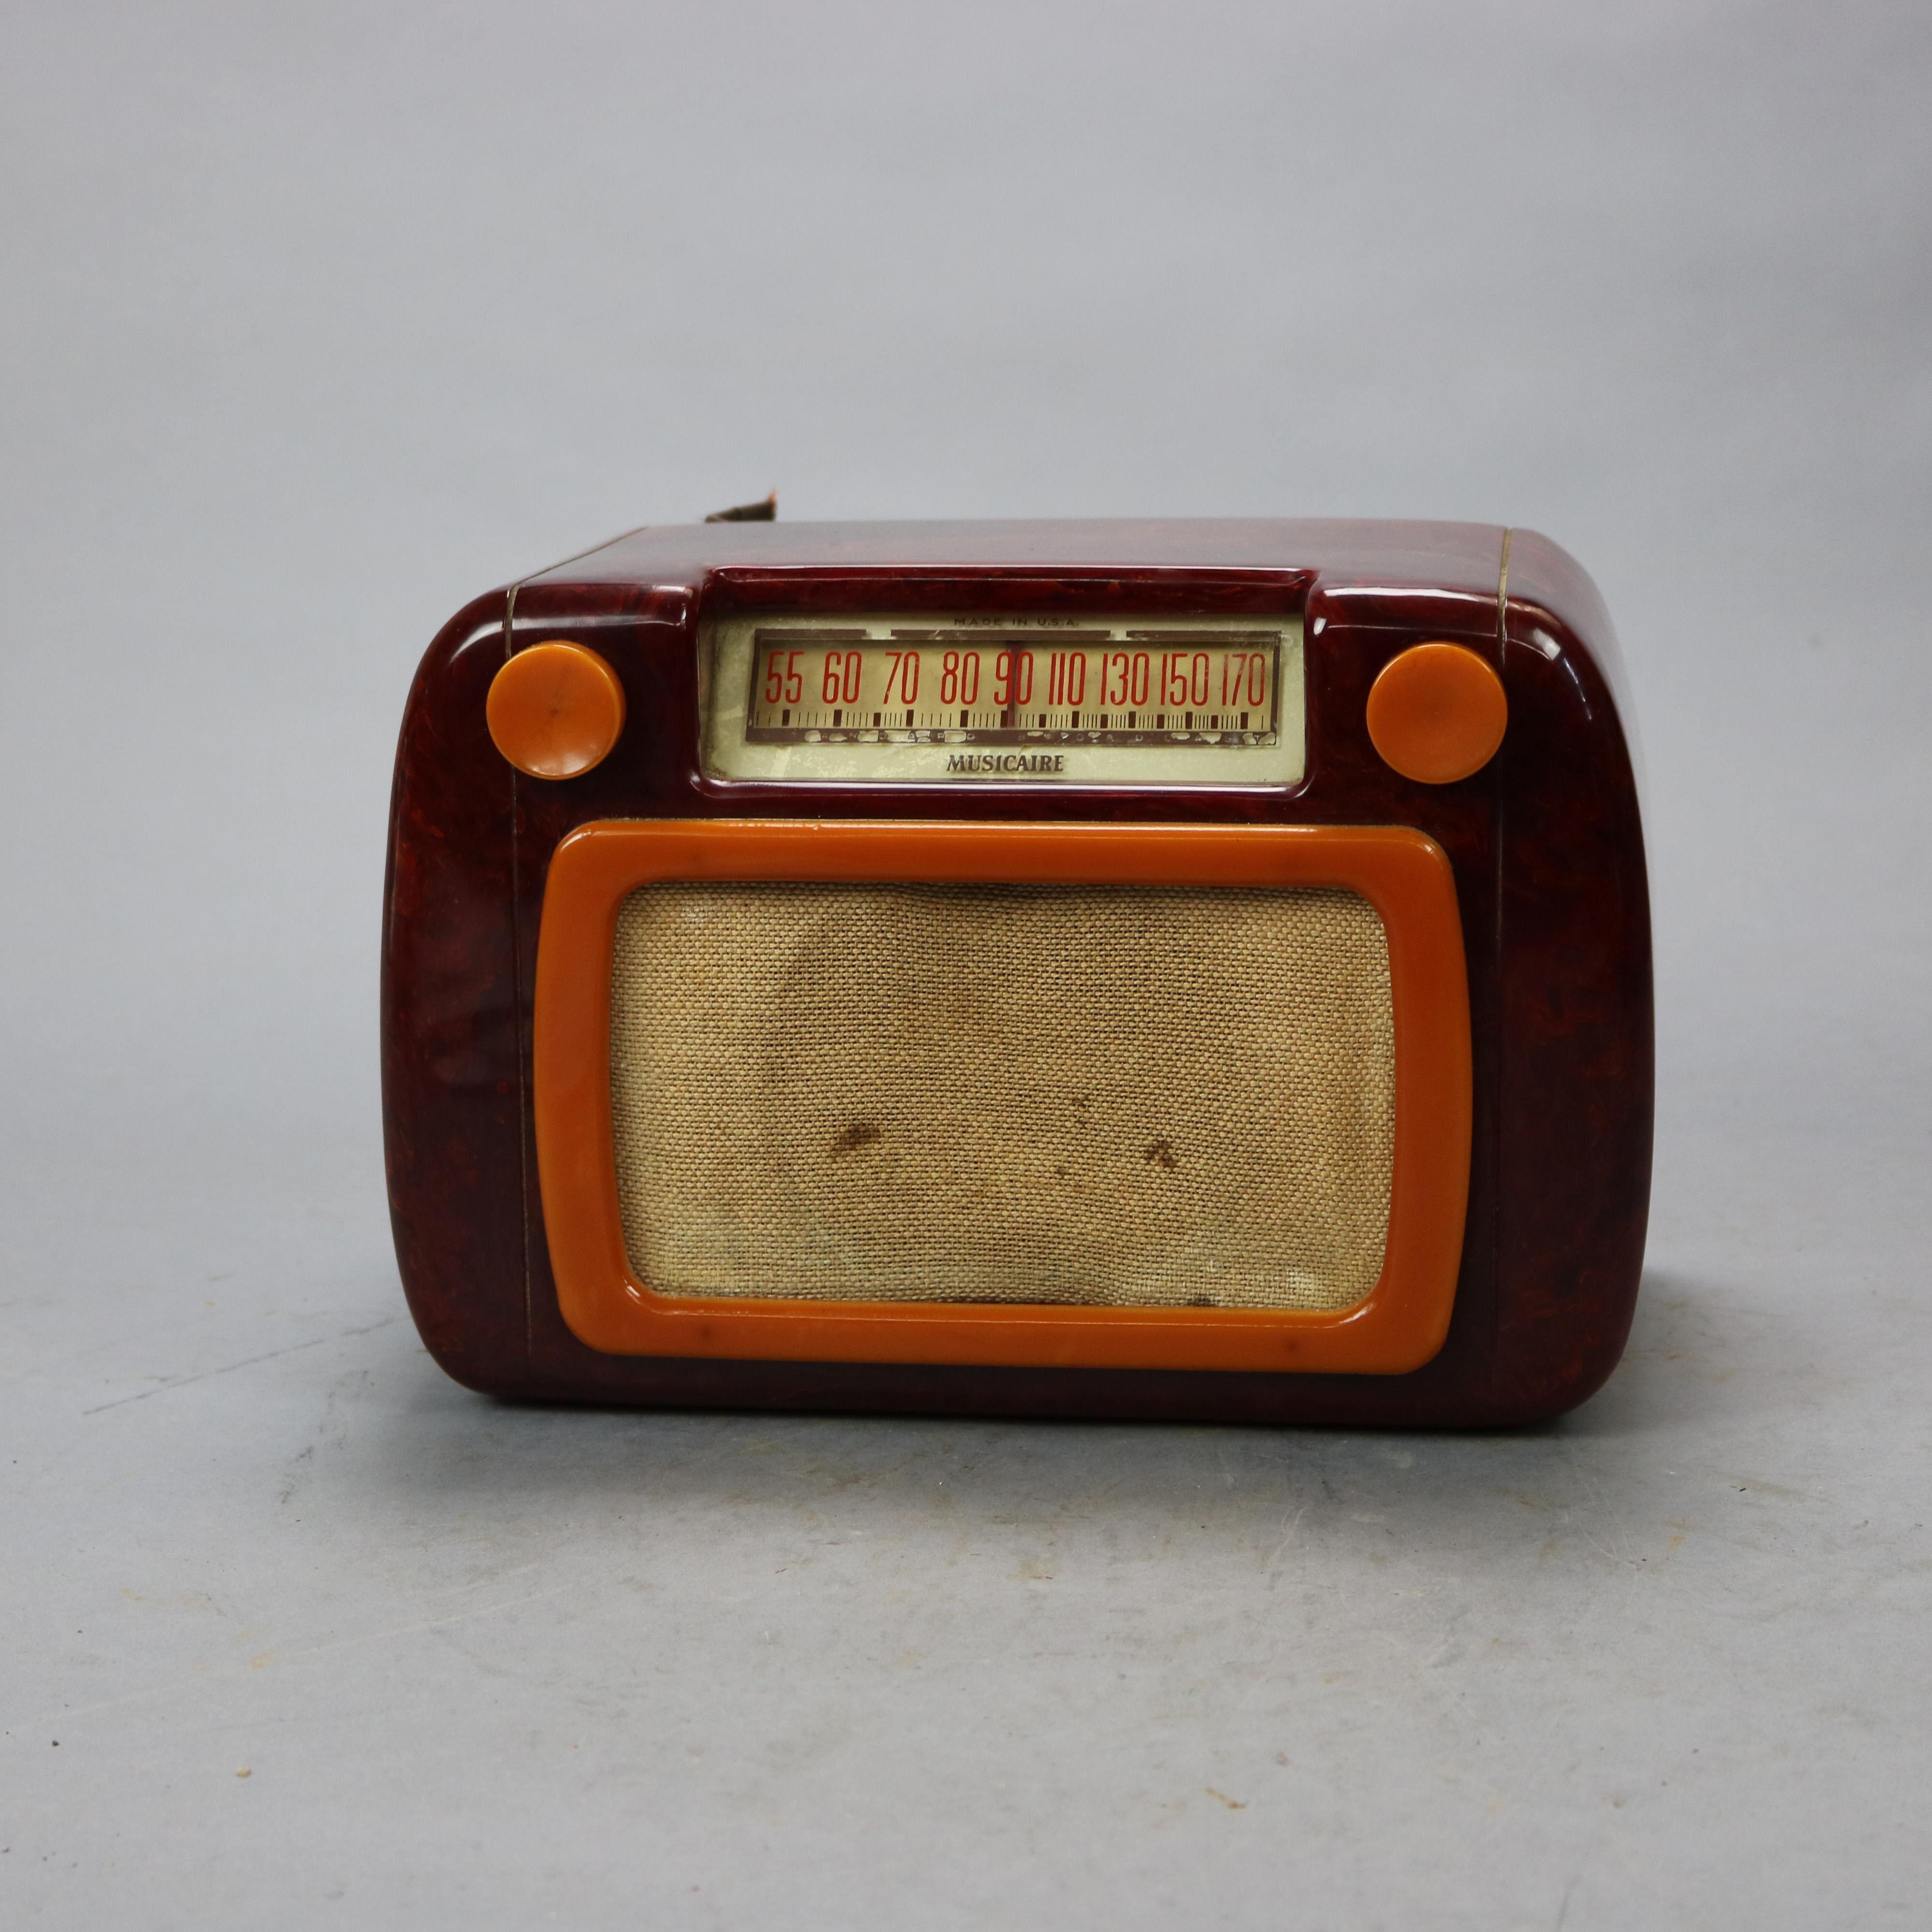 musicaire antique radio